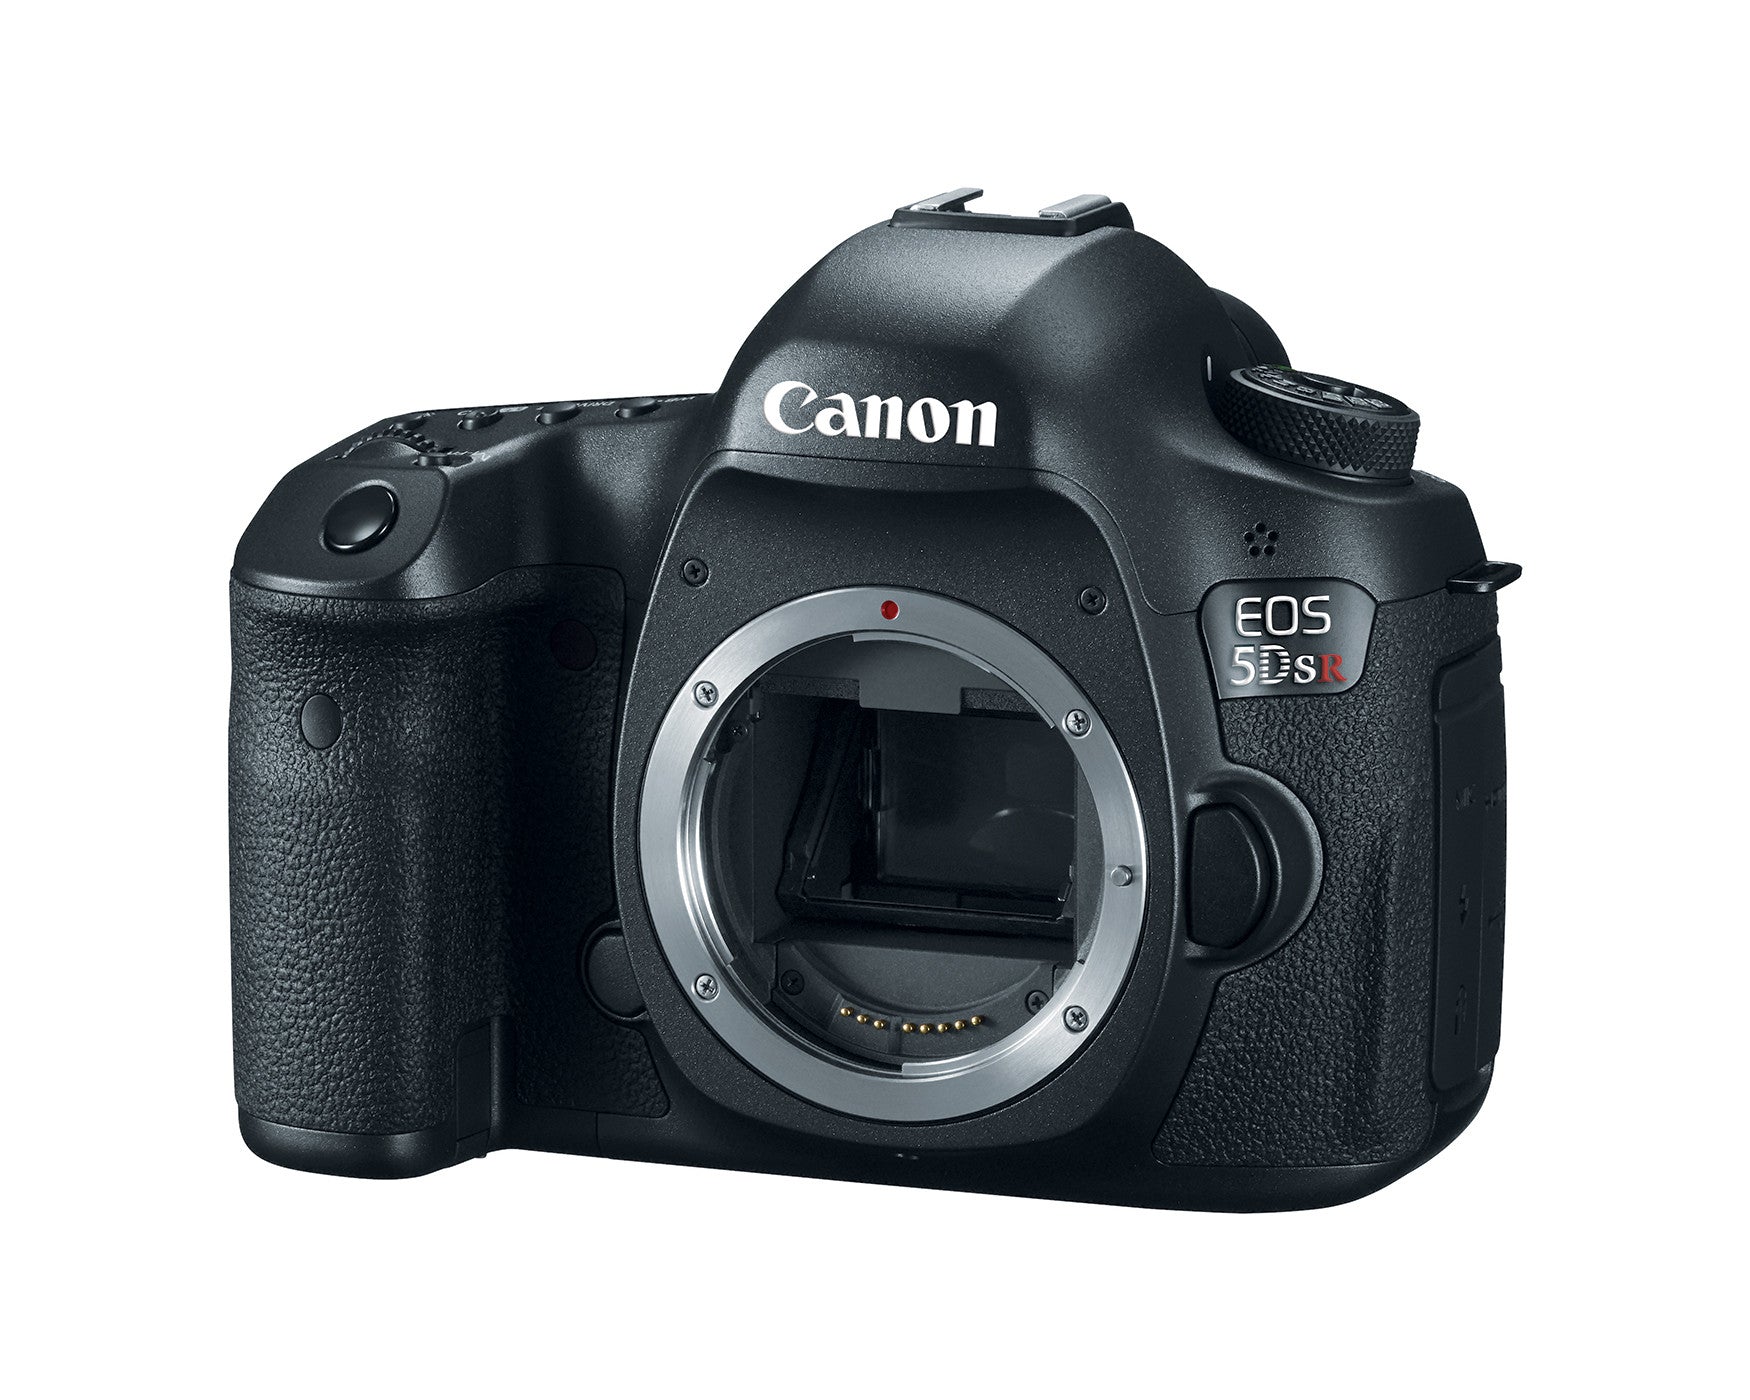 Canon EOS 5DS R Digital Camera Body, camera dslr cameras, Canon - Pictureline  - 4